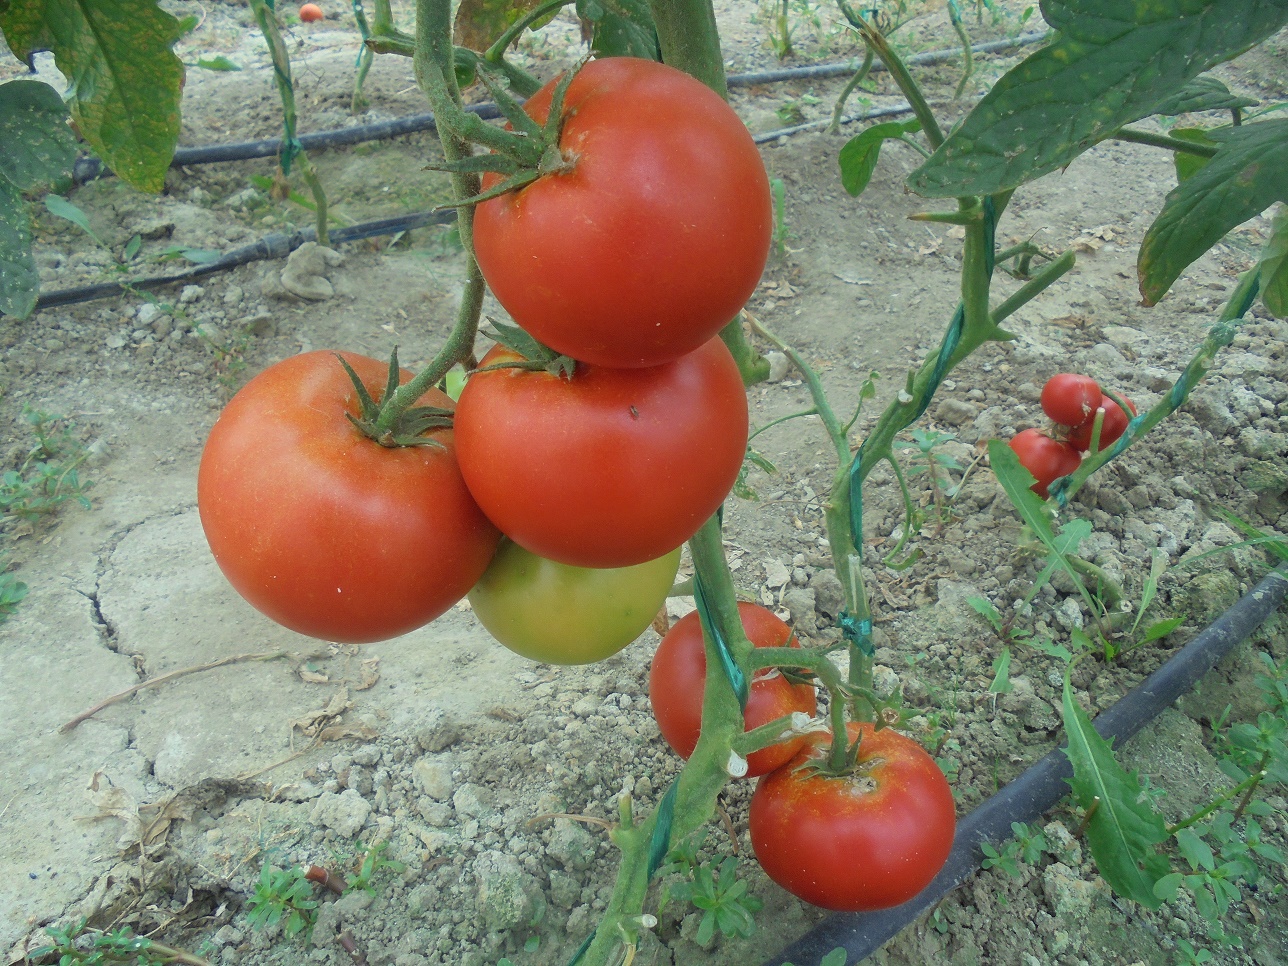 Raport pesticide 2019: Aproape jumătate din probele de tomate din cadrul programului ”Tomate românești” au conținut reziduuri de pesticide; între timp, a scăzut suprafața cultivată cu legume în sistem ecologic